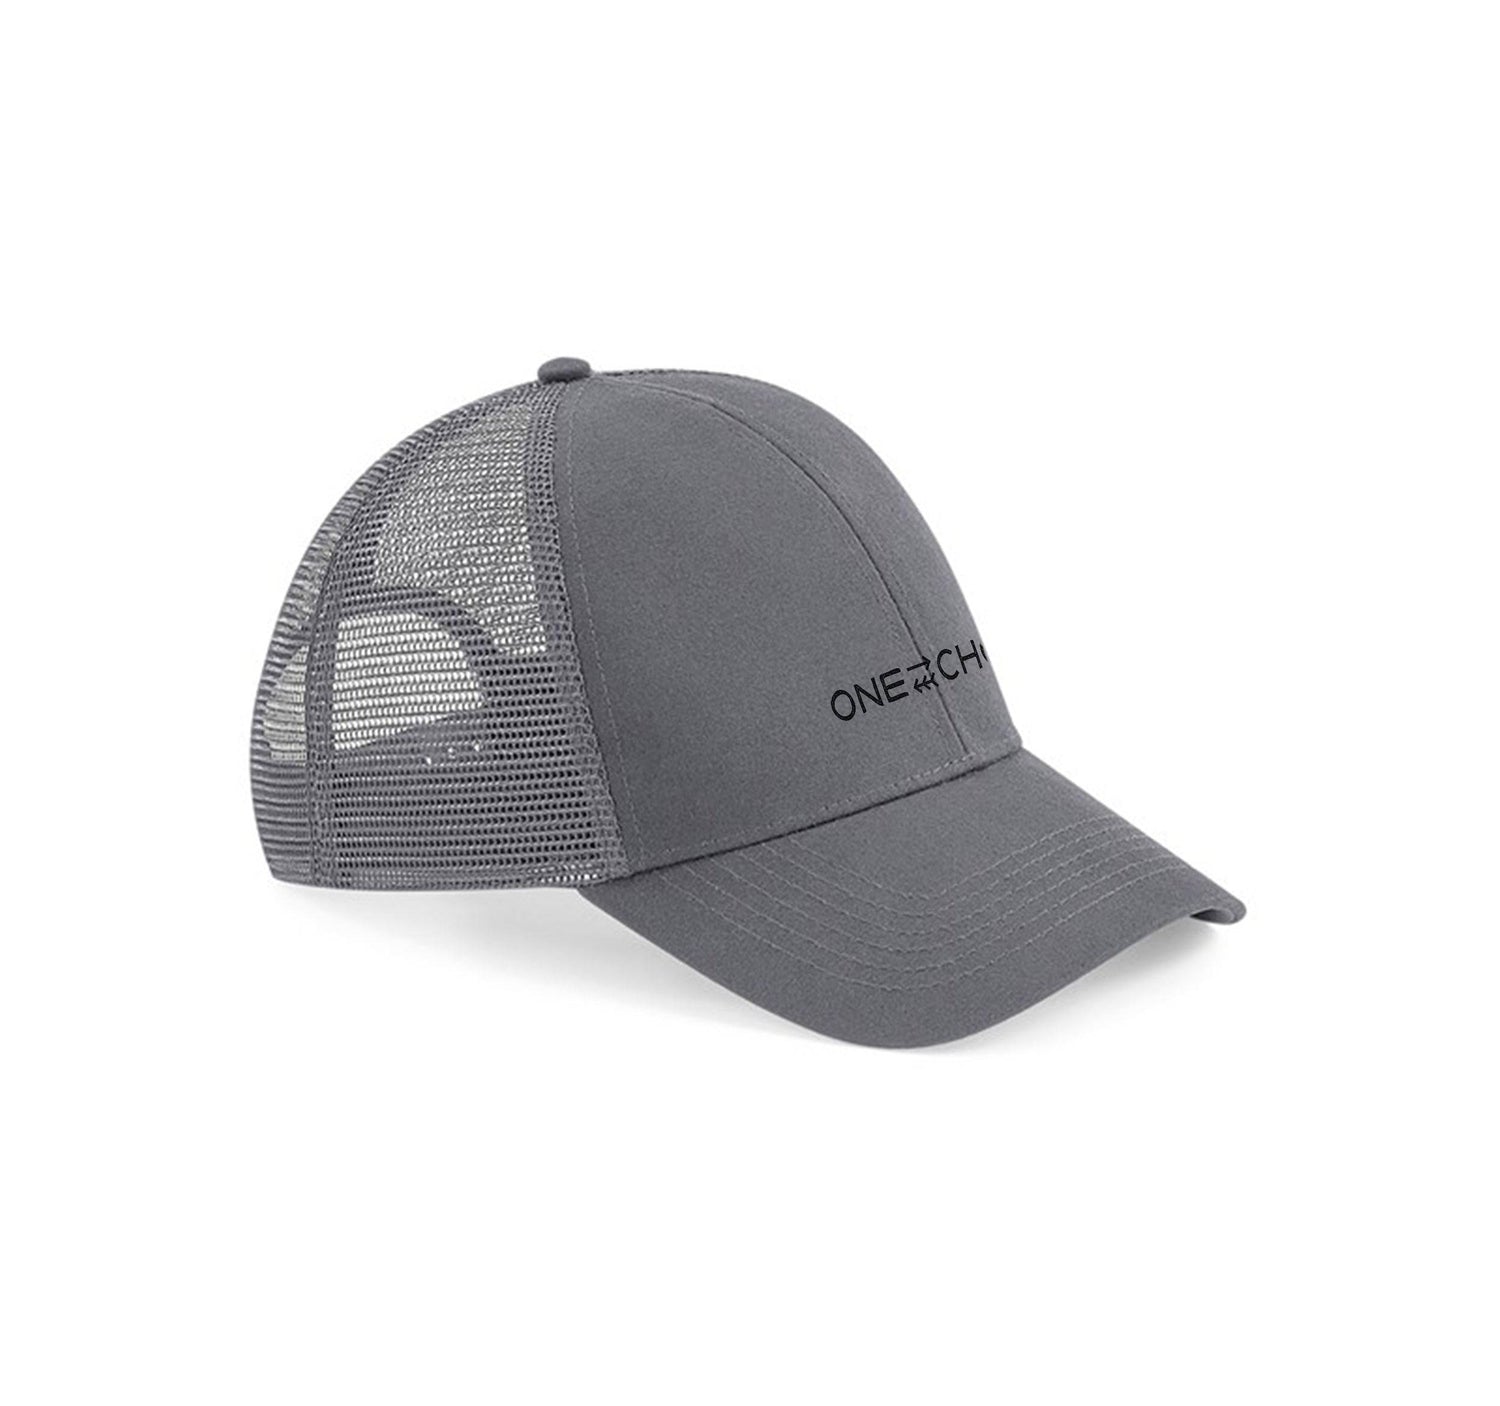 Organic Trucker Hat - Grey - One Choice Apparel